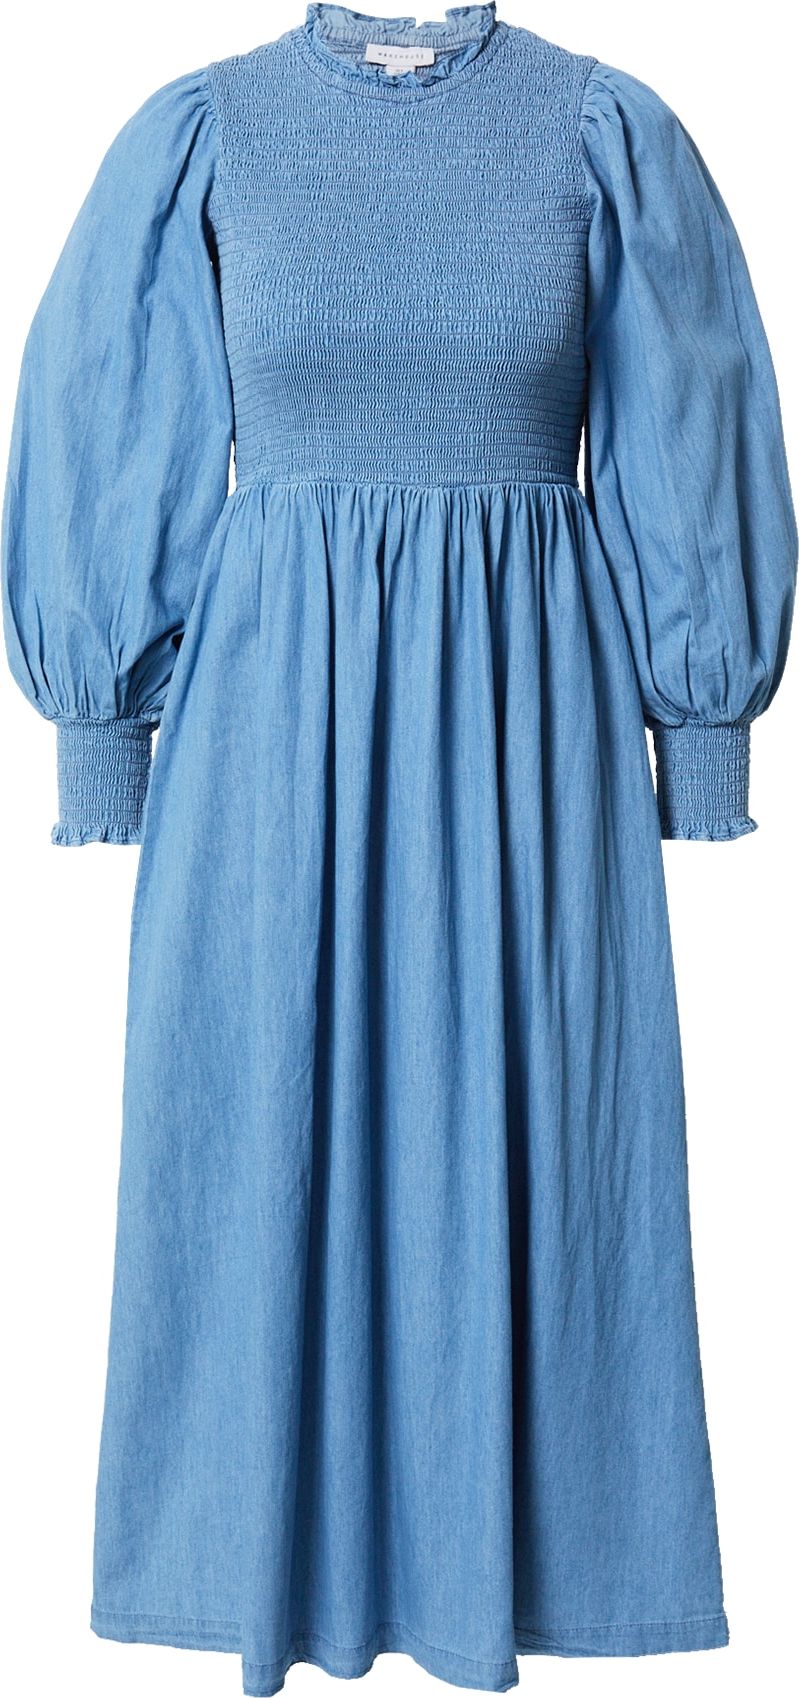 Šaty Warehouse modrá džínovina